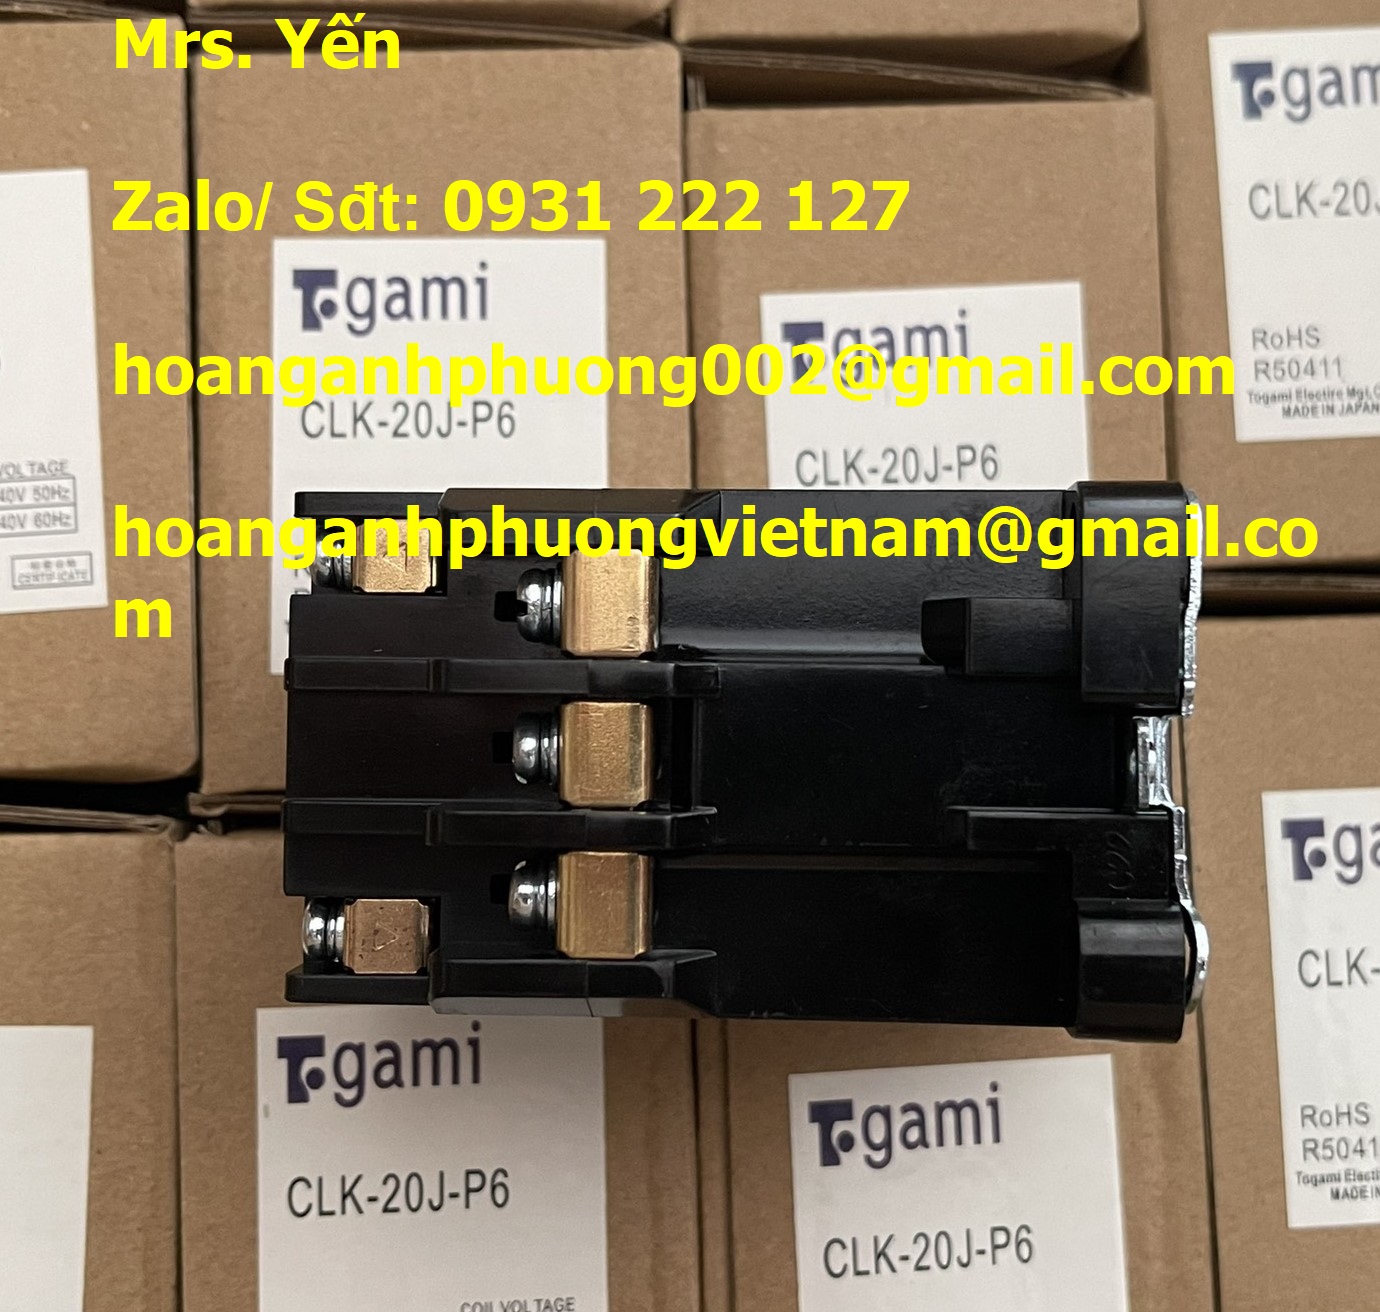 CKL-20J-P6 Contactor Togami chính hãng giá rẻ toàn quốc